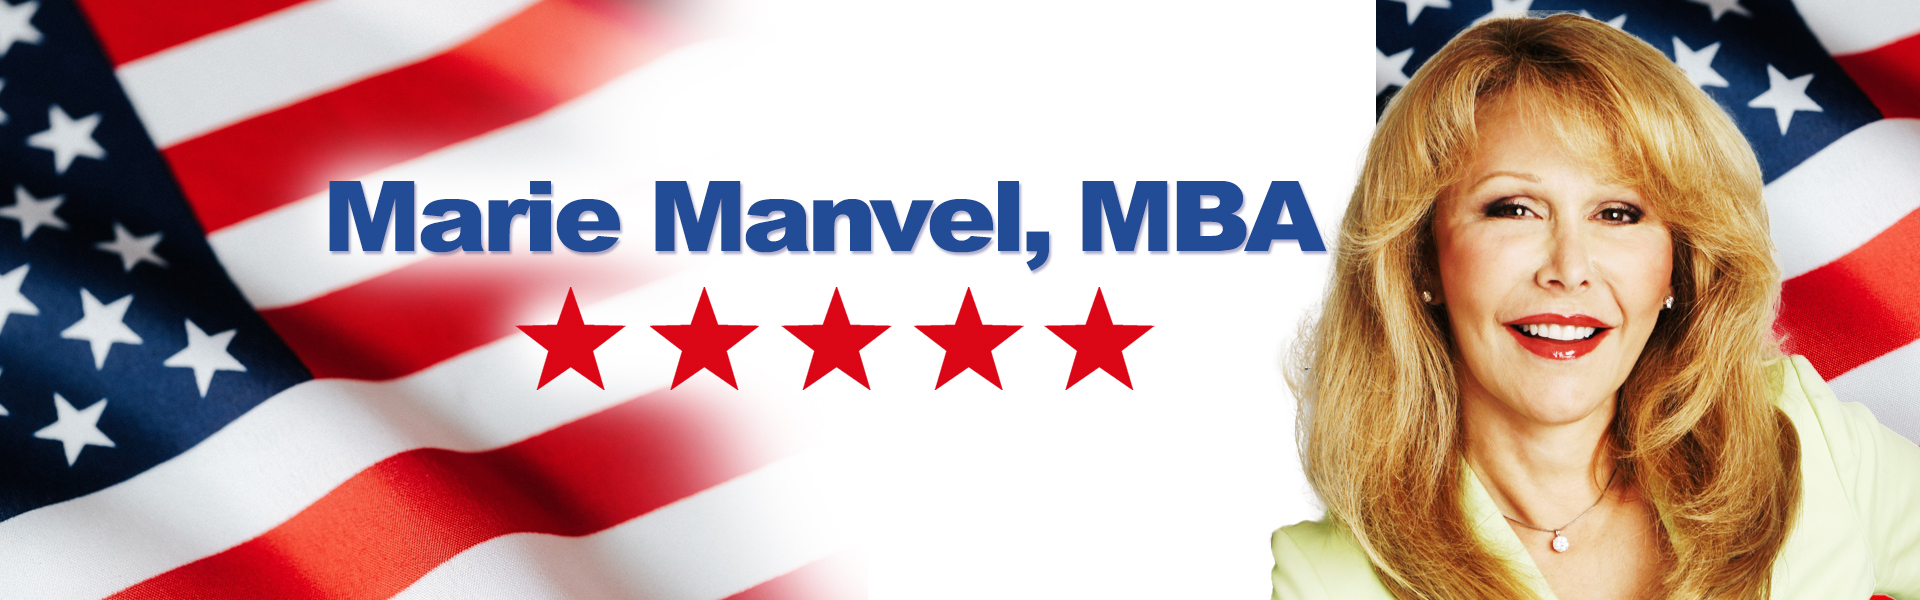 Marie Manvel MBA Banner